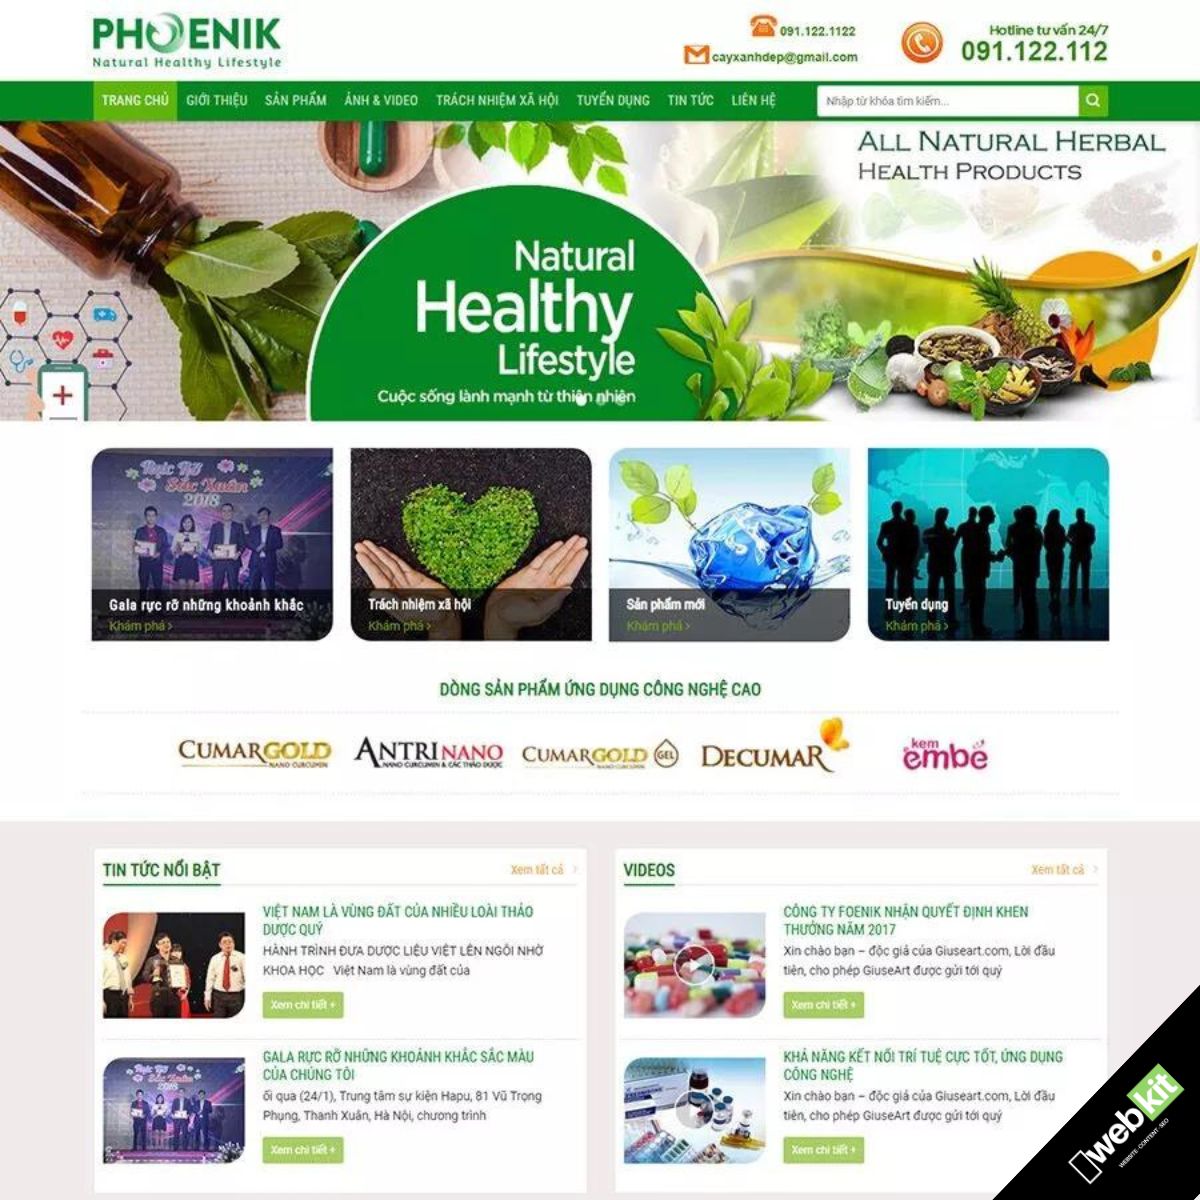 Thiết kế website bán dược phẩm tốt cho sức khoẻ - WebKit 6087